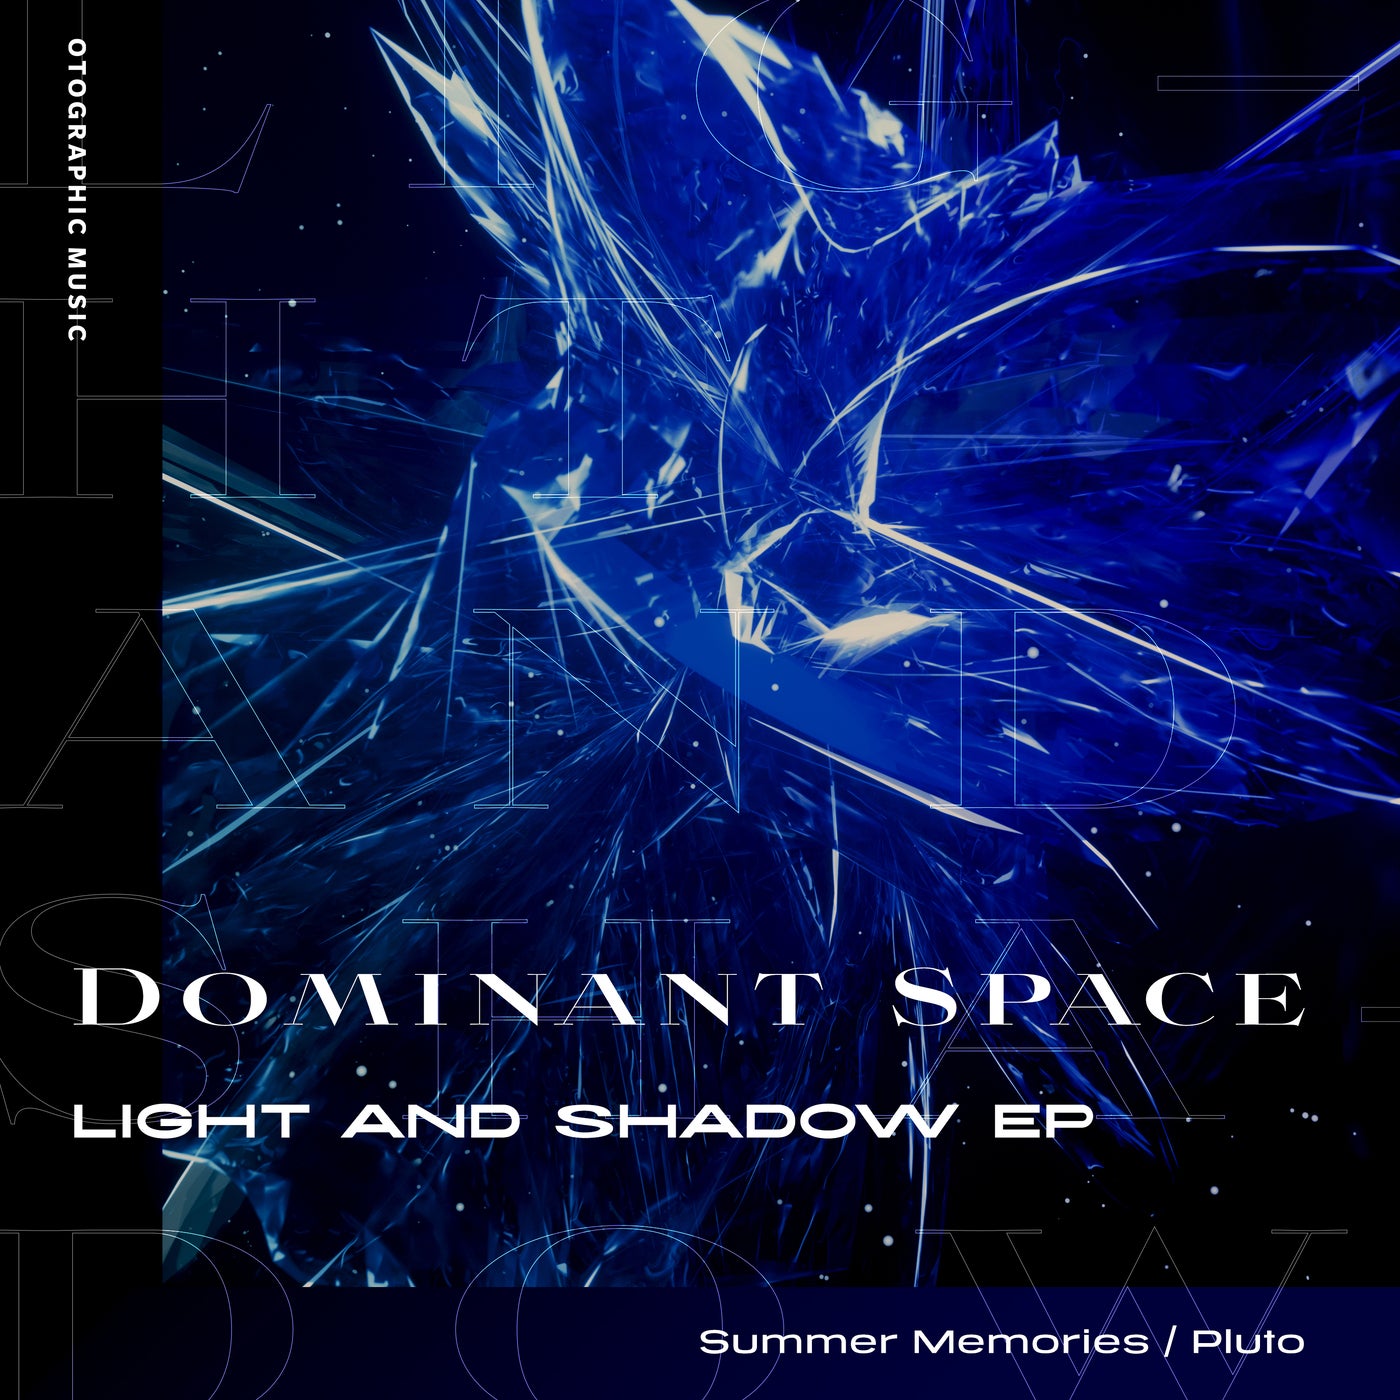 Light and Shadow EP